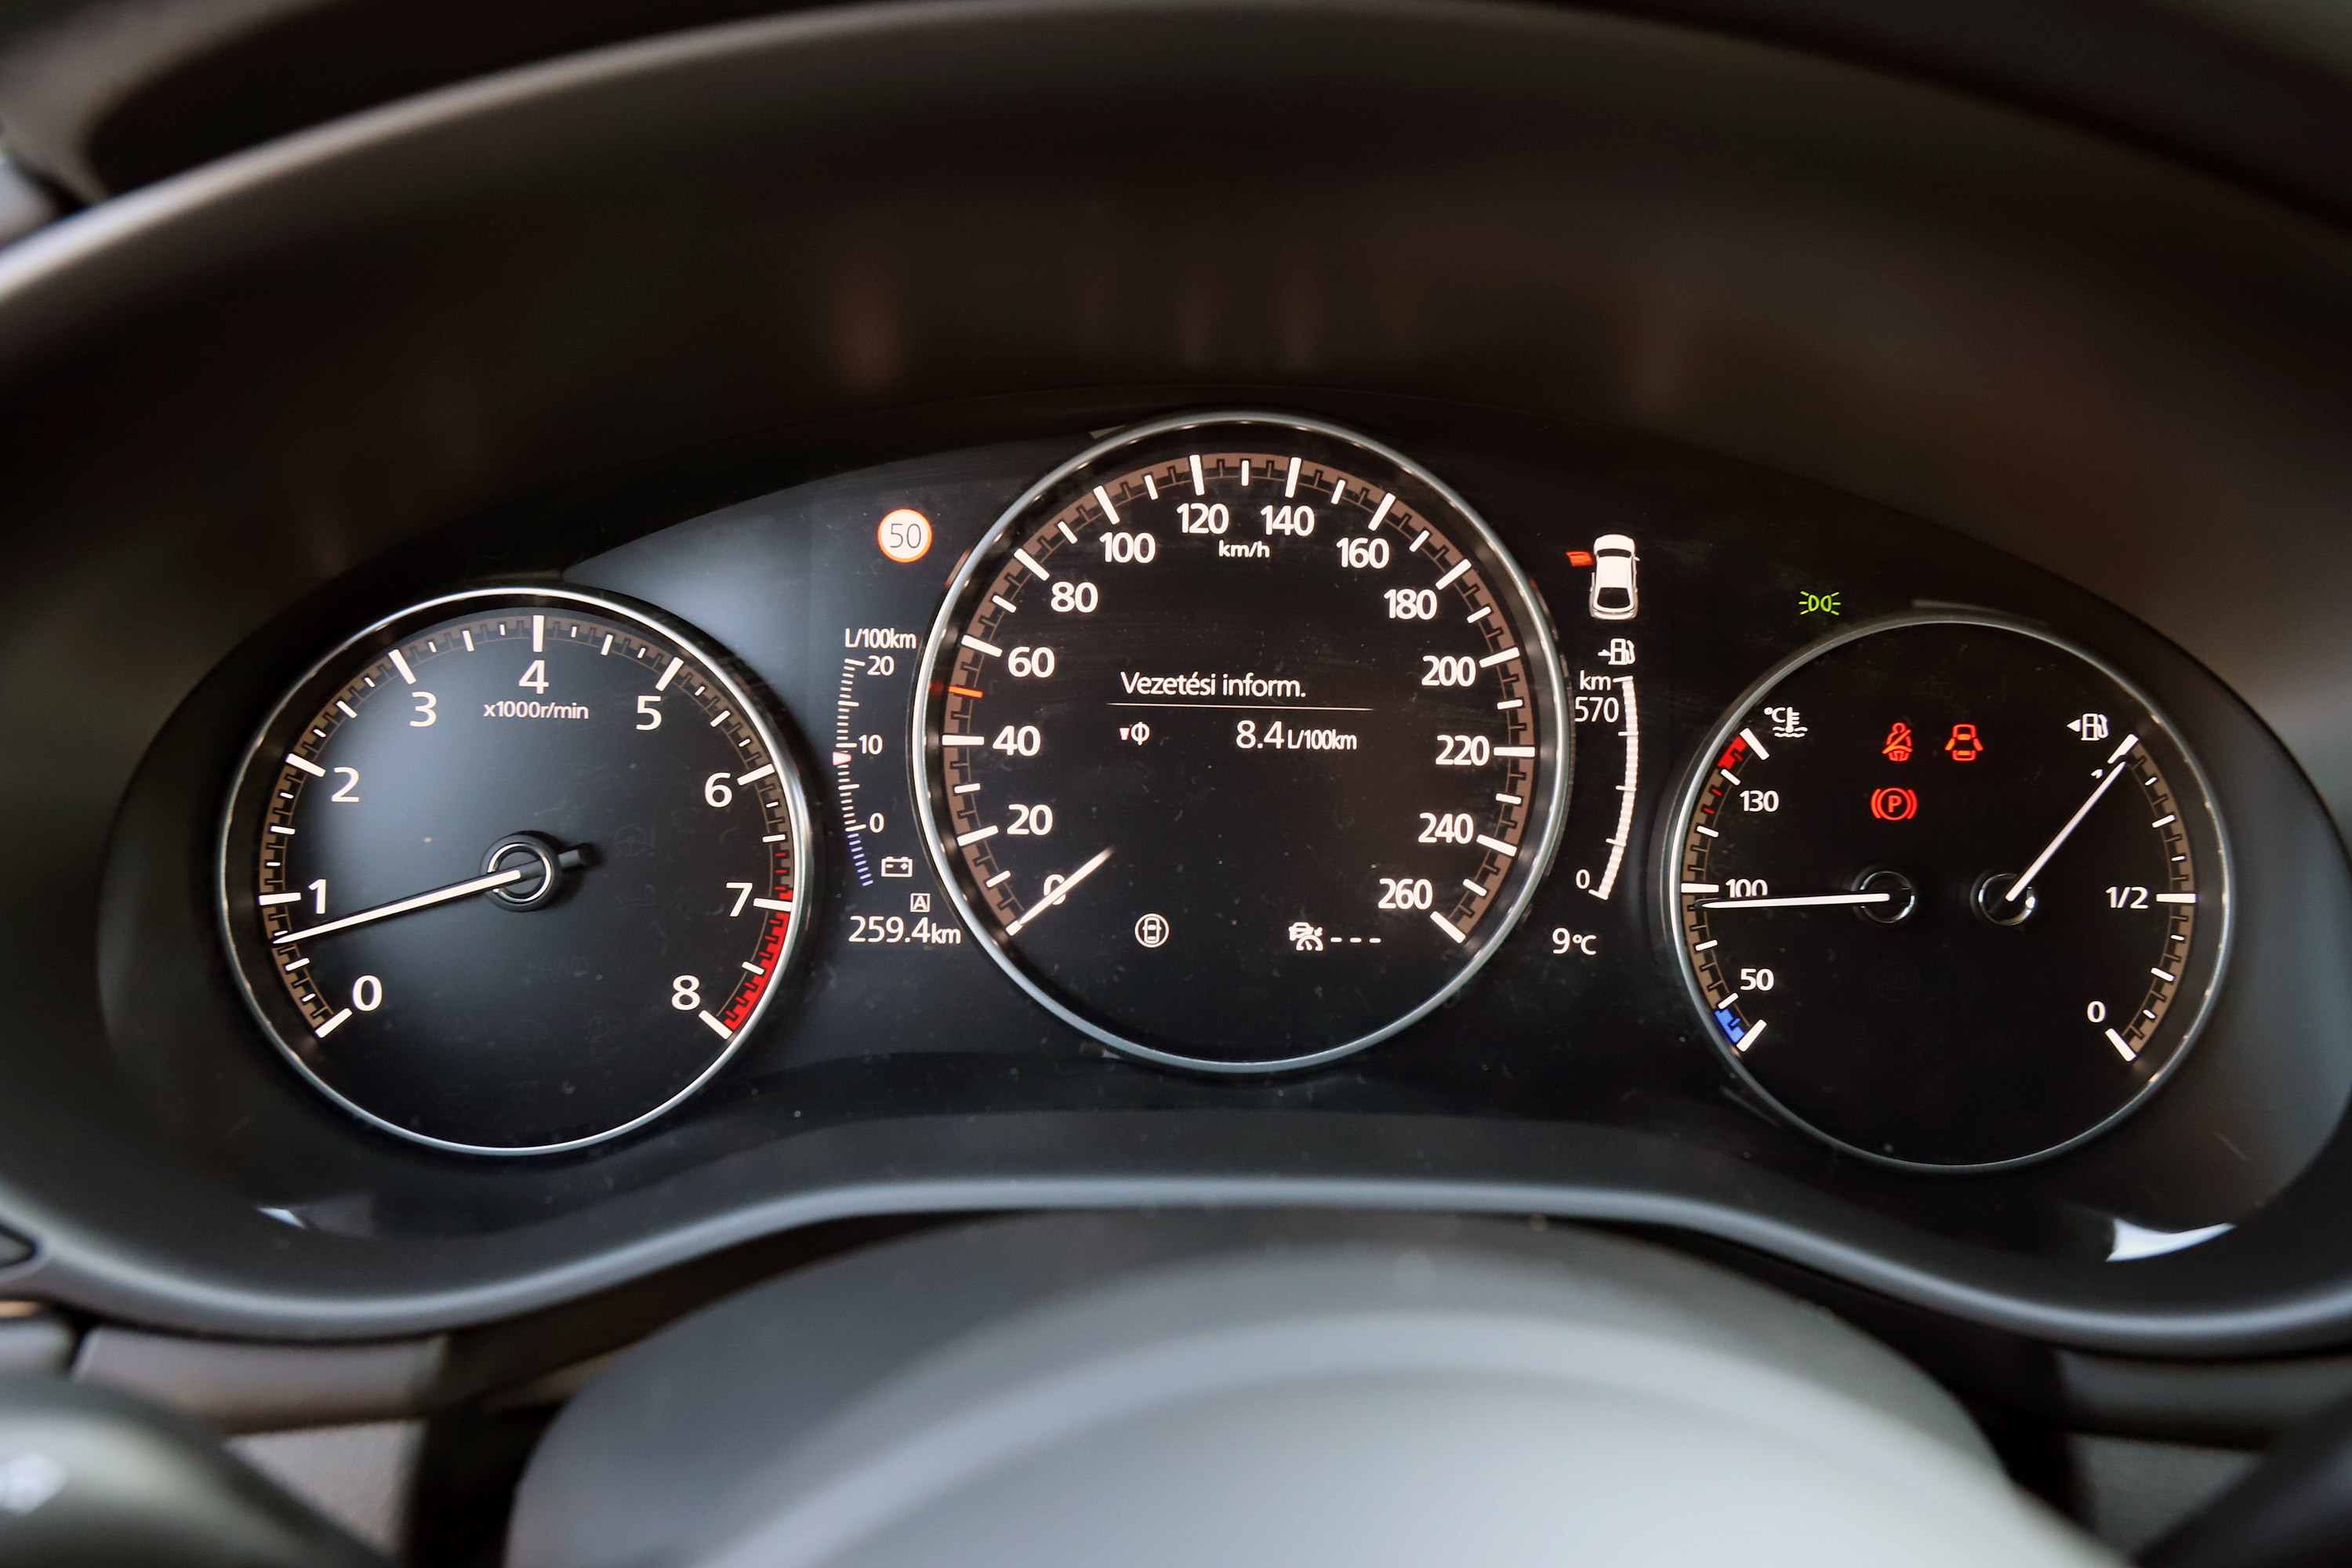 Benzinmotor, ami eddig még senkinek nem sikerült – Mazda3 Skyactiv-X teszt 27